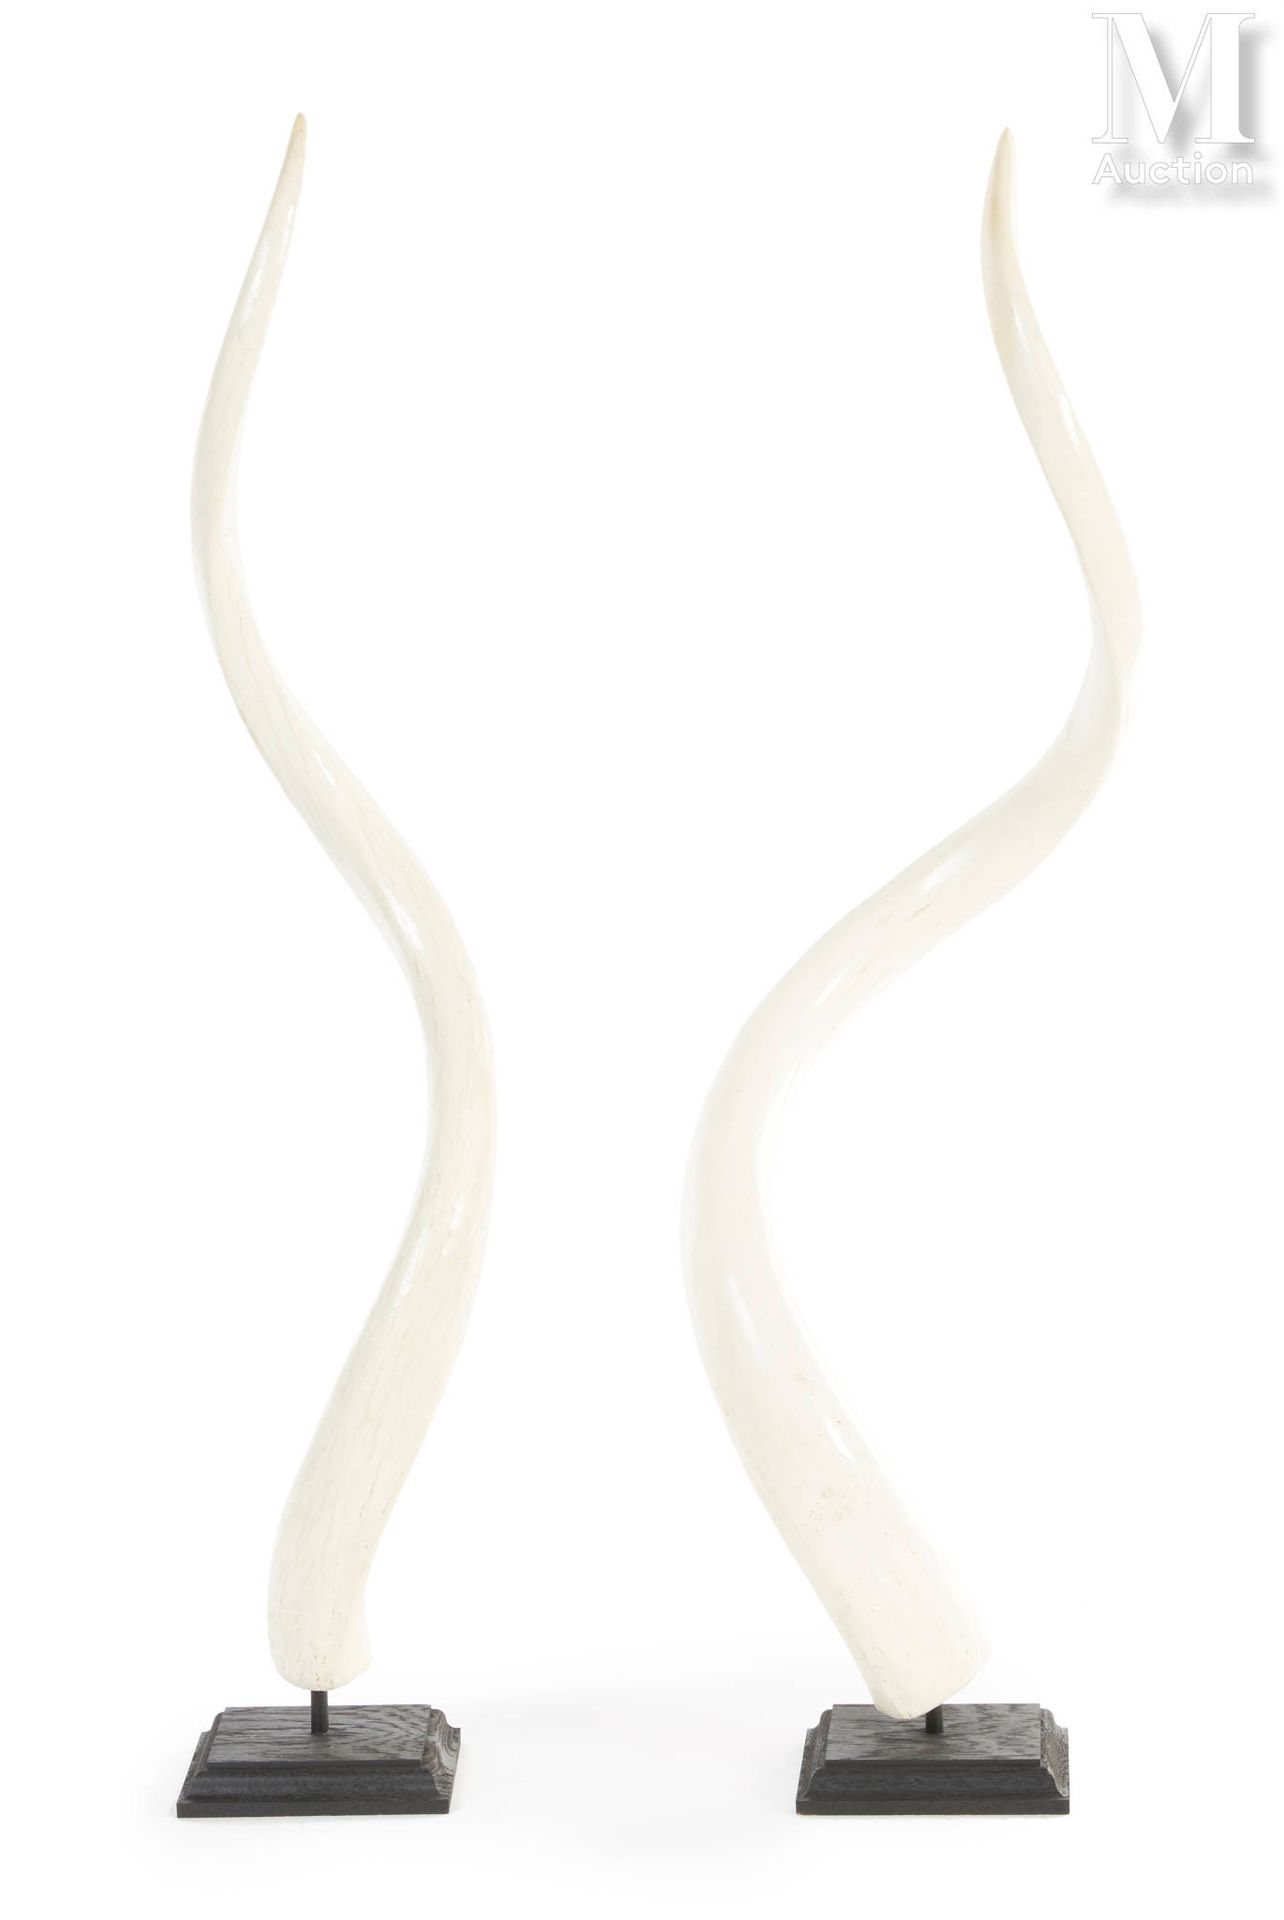 DEUX CORNES DE GRAND KOUDOU Internal bone. Plinths.

Total height: 74 and 75 cm.&hellip;